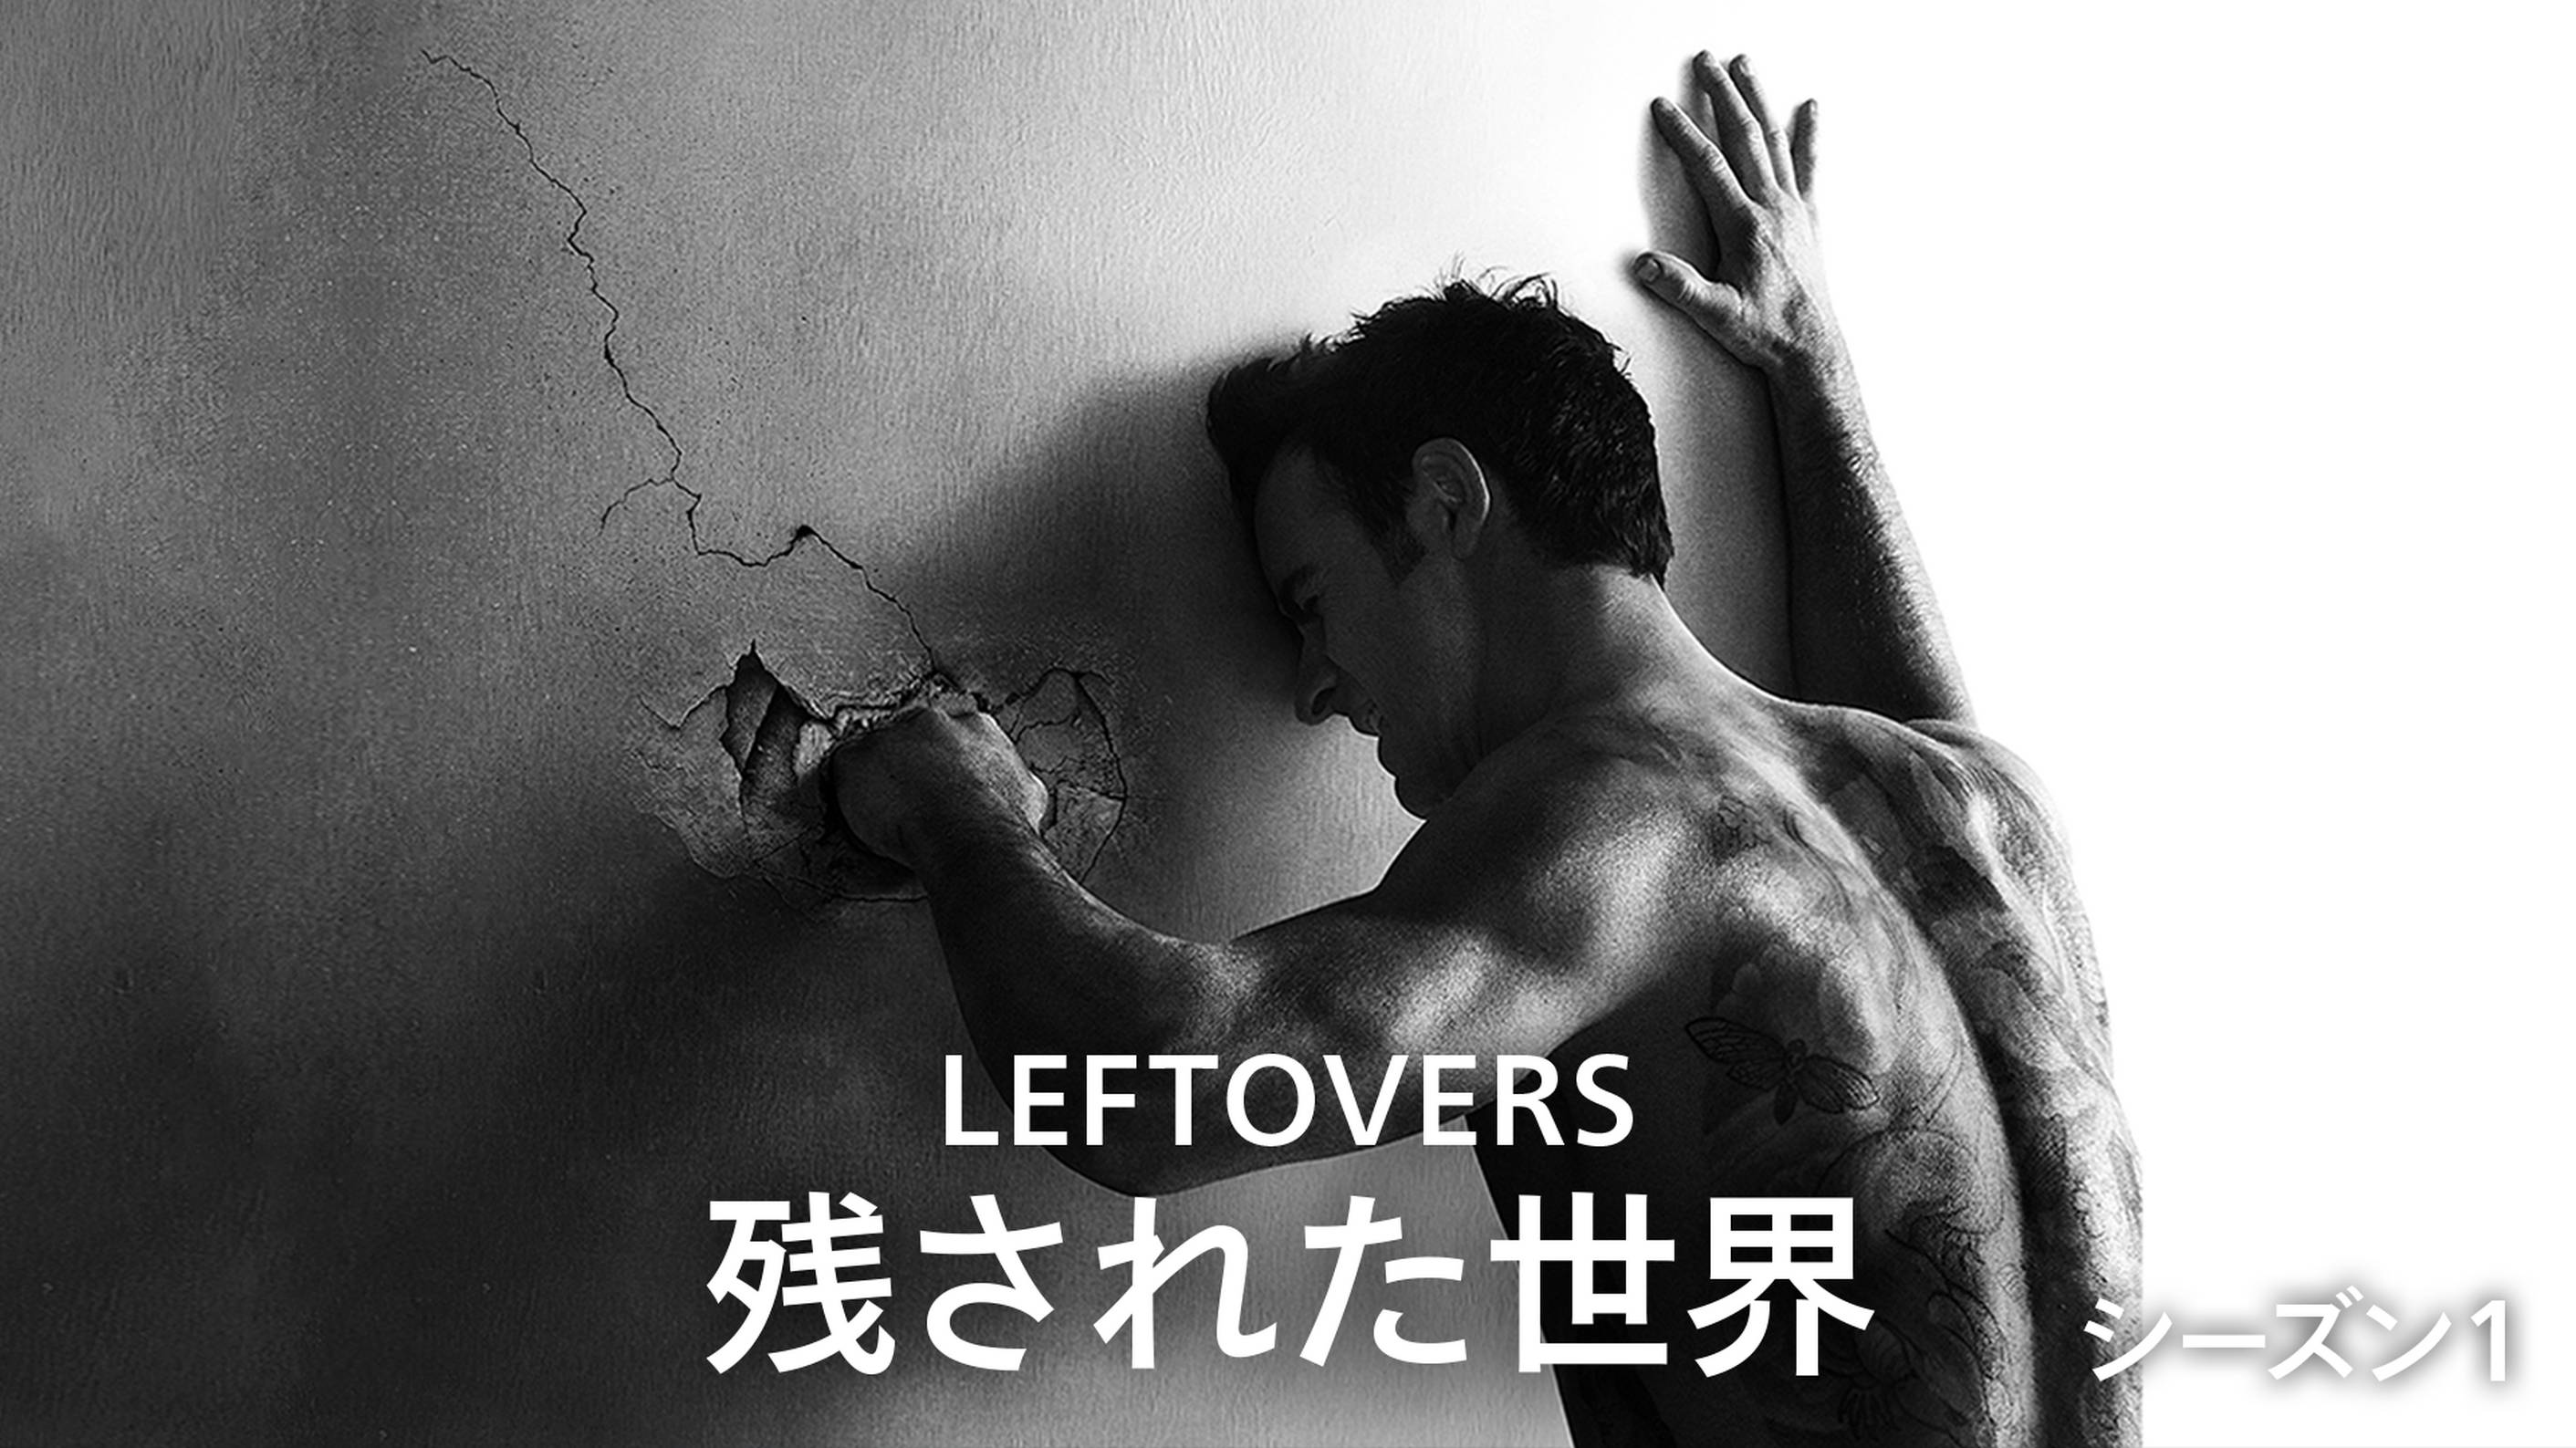 LEFTOVERS/残された世界